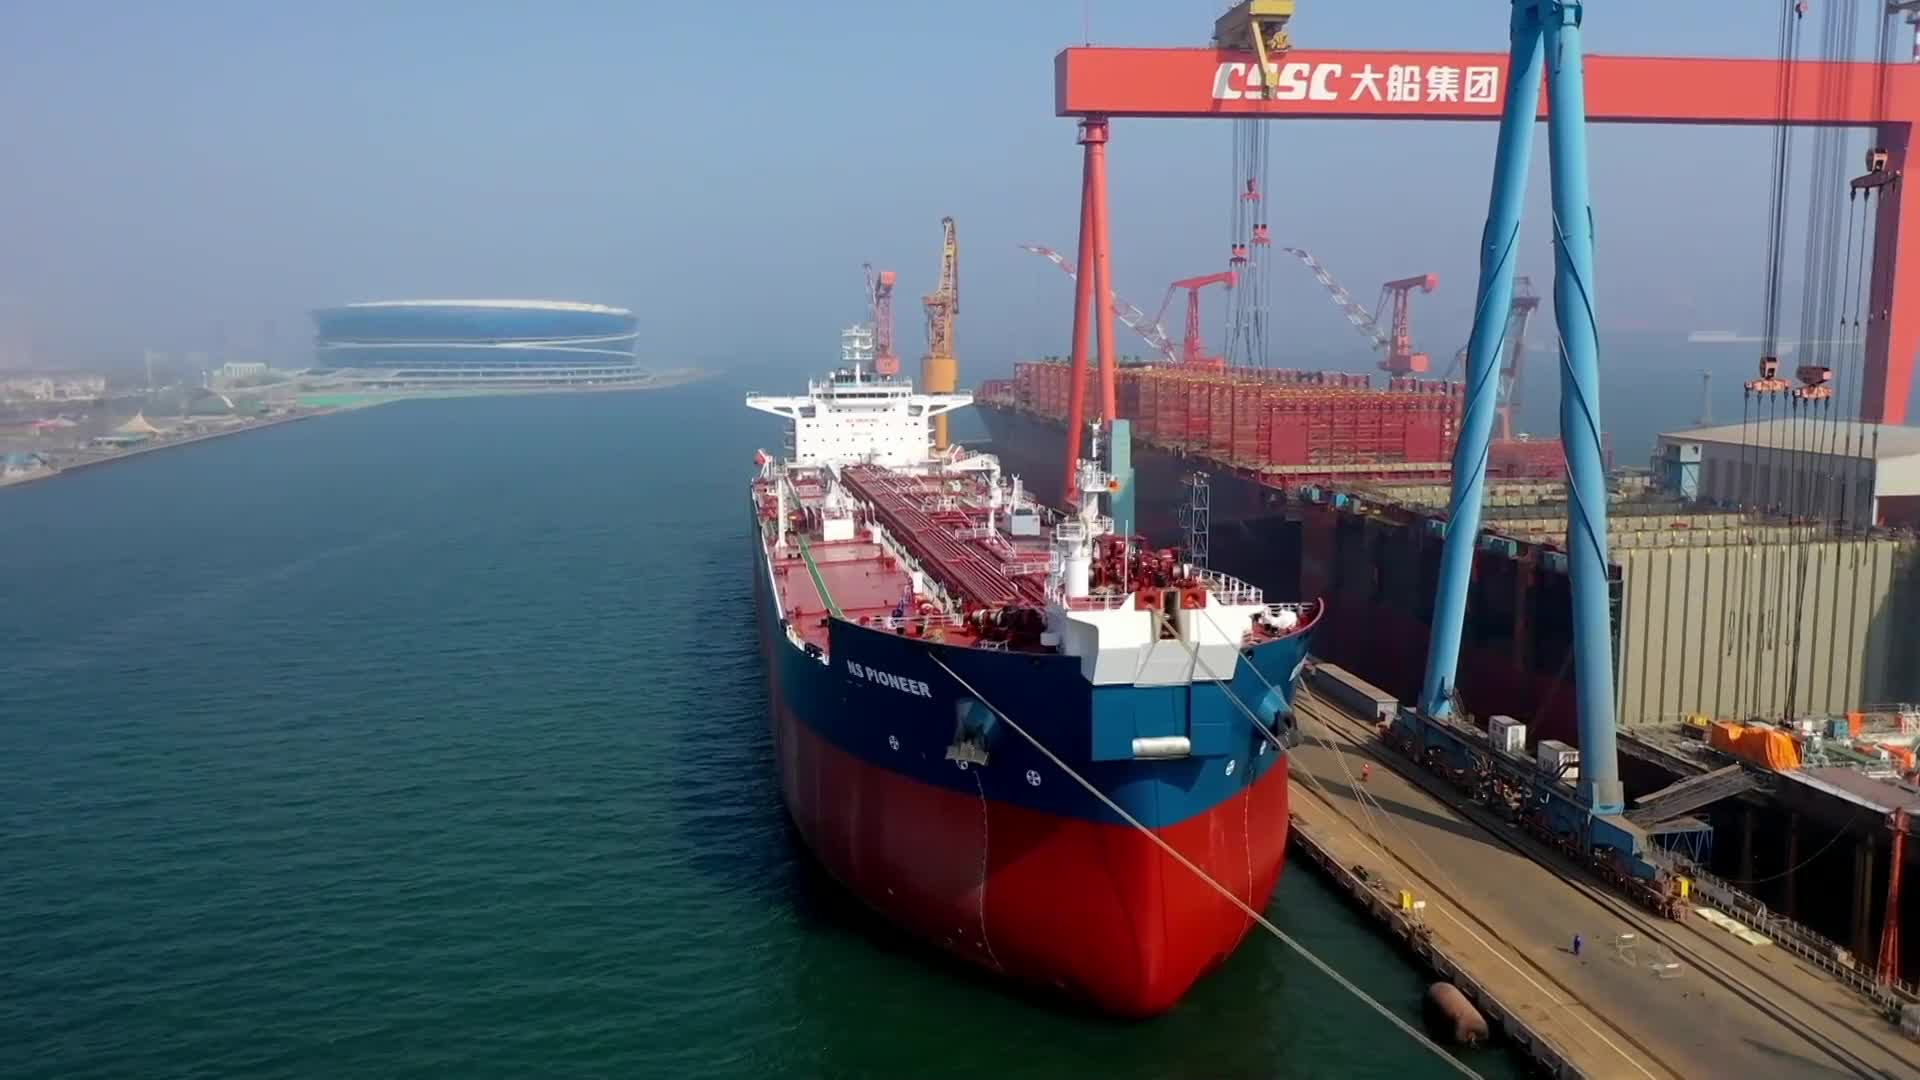 GLOBALink : บริษัทจีนส่งมอบ 'เรือบรรทุกน้ำมัน' ป้อนโครงการในบราซิล